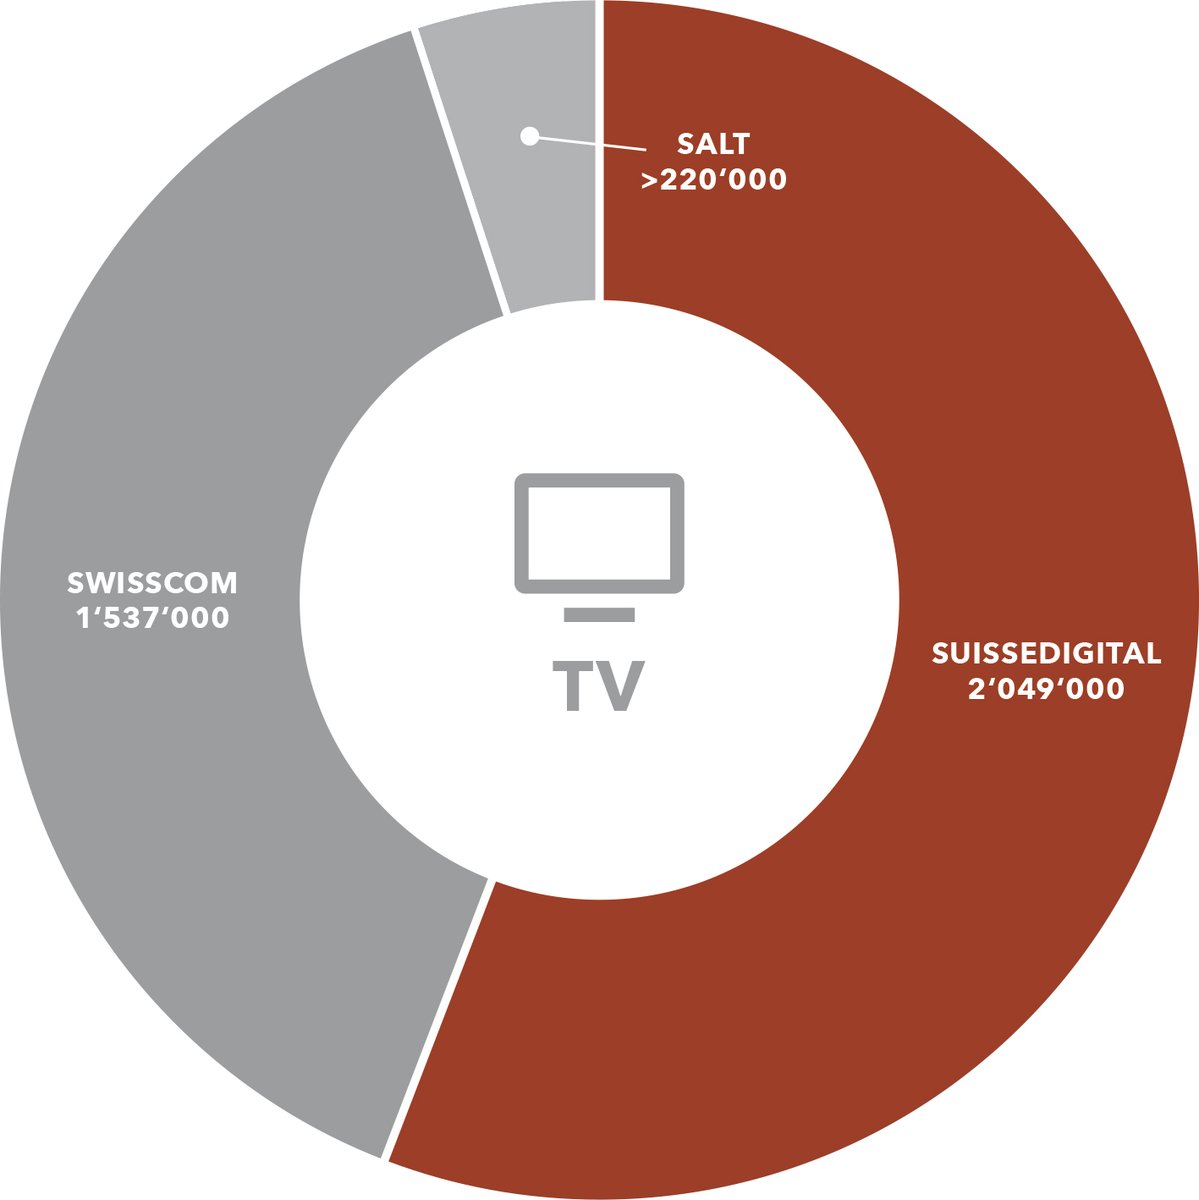 2023 im Rückblick: Suissedigital-Mitglieder bleiben mit deutlichem Abstand Marktführer im Fernsehen:
lnkd.in/dYkZJzpP

#Jahresrückblick #Telekommunikation #TV #Internet #Mobilfunk